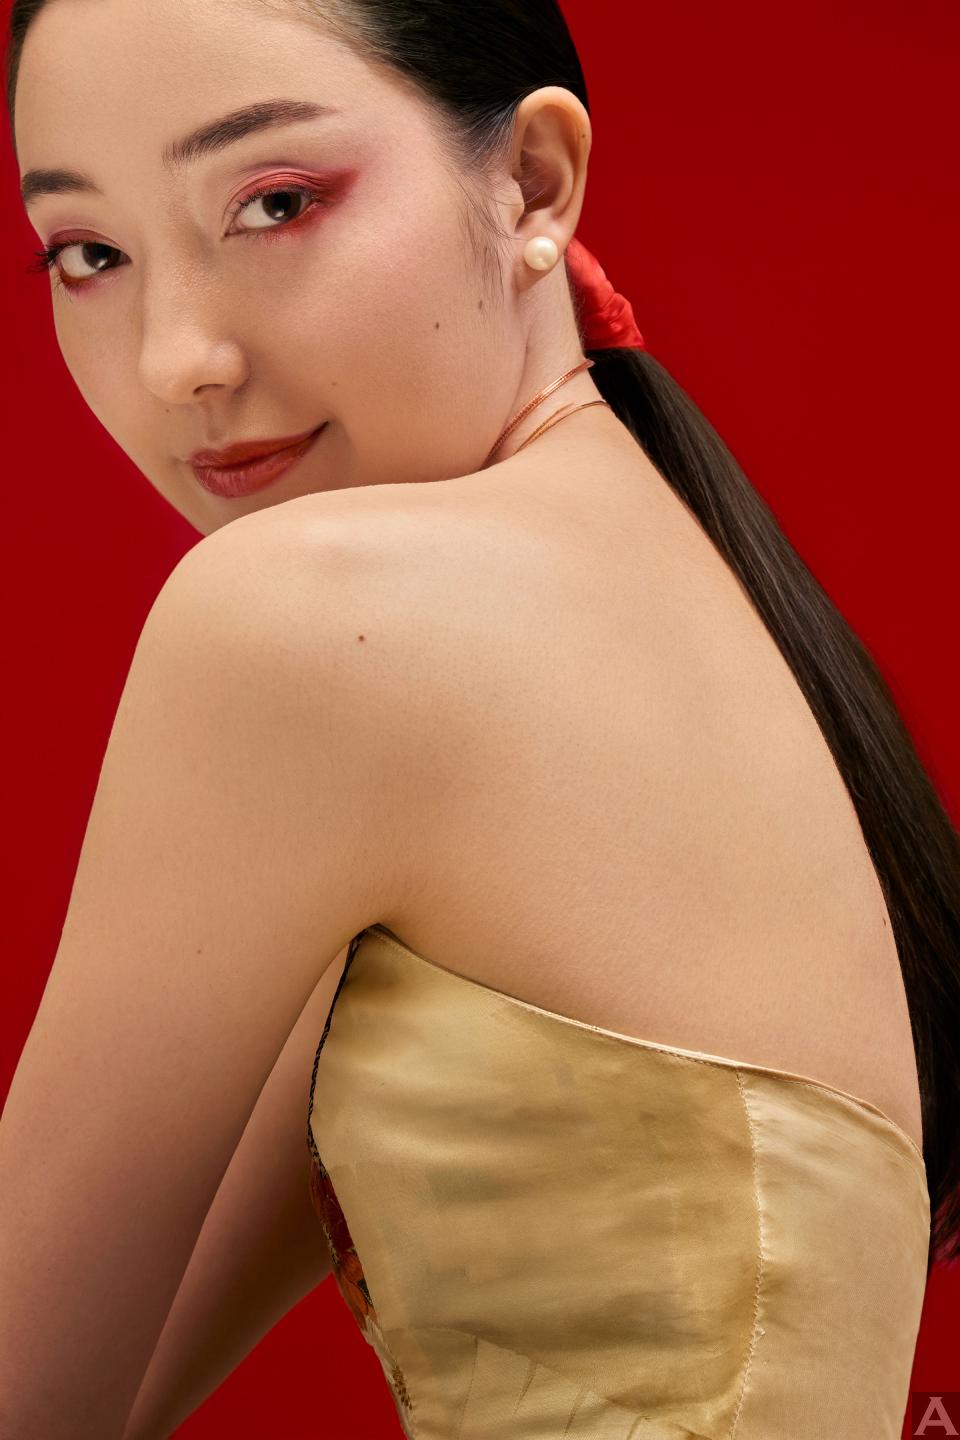 東京外国人モデル事務所アクアモデル所属のハーフモデルのアンニ